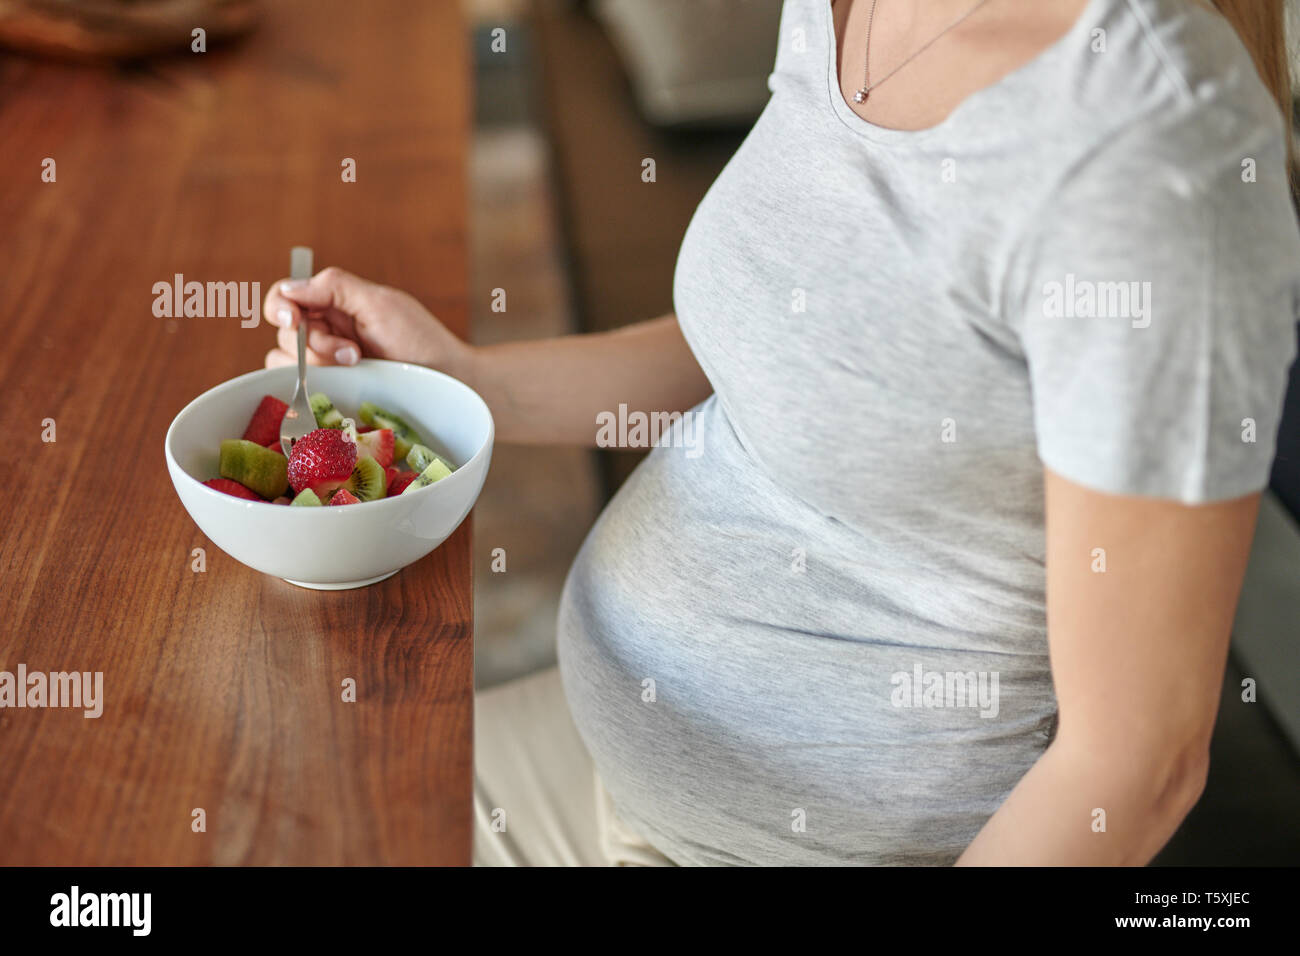 Donna incinta mangiare una tazza di macedonia di frutta con fragole fresche seduti a un tavolo da pranzo in un vicino sul cibo e la sua pancia in una dieta sana Foto Stock